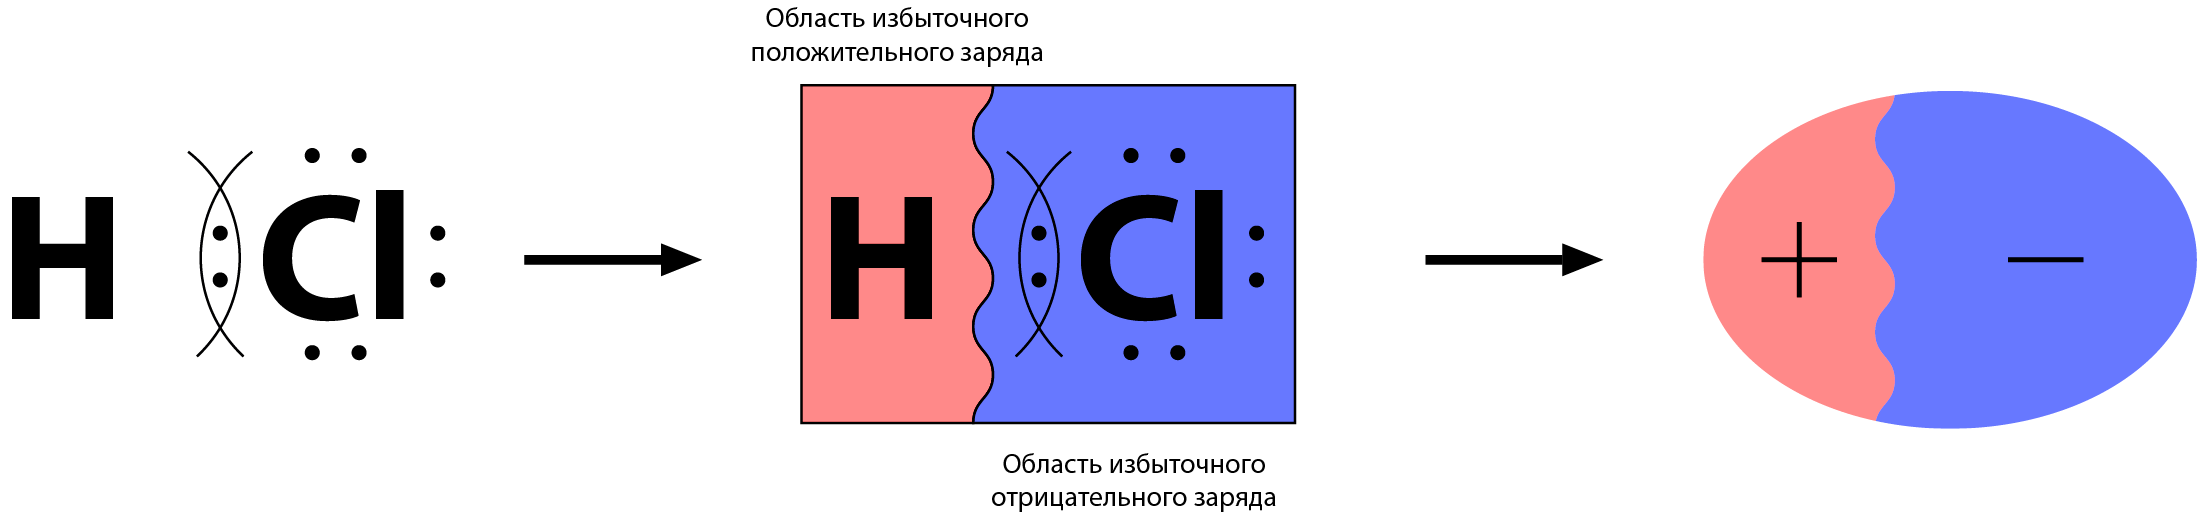 Общая электронная пара в молекуле сложного вещества смещена к одному из атомов